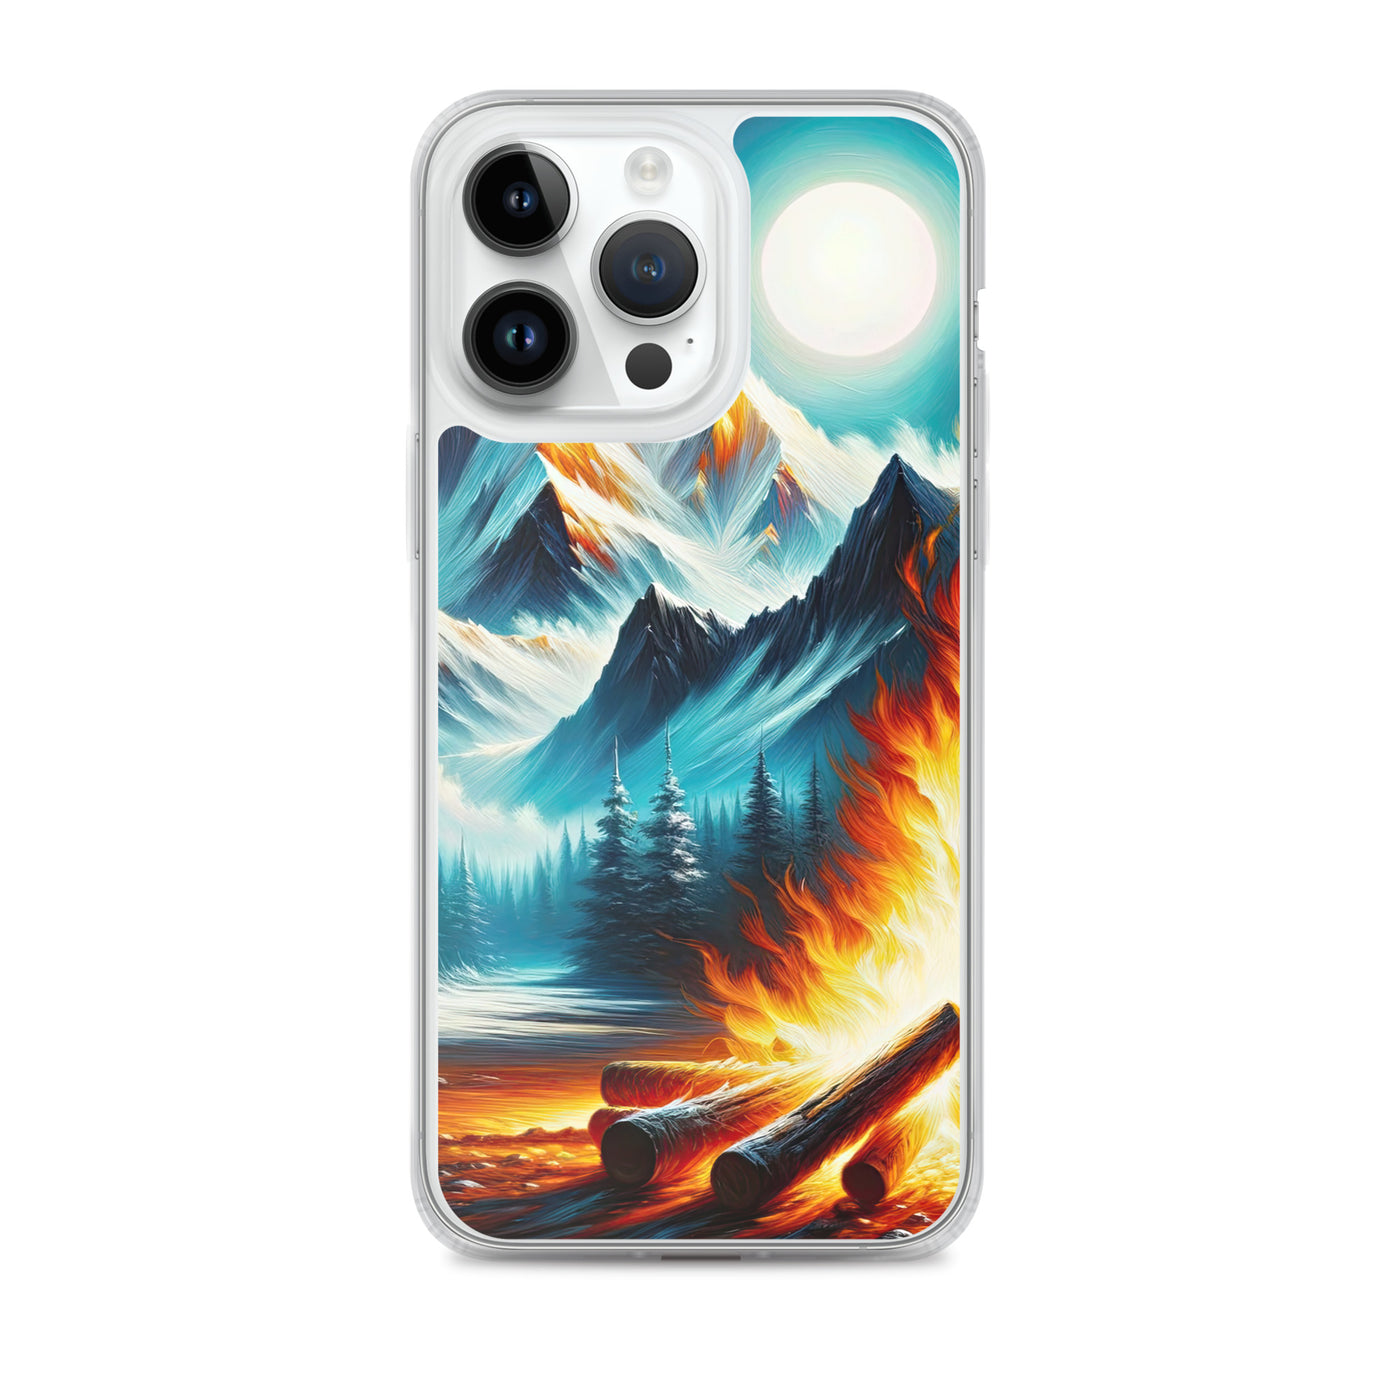 Ölgemälde von Feuer und Eis: Lagerfeuer und Alpen im Kontrast, warme Flammen - iPhone Schutzhülle (durchsichtig) camping xxx yyy zzz iPhone 14 Pro Max